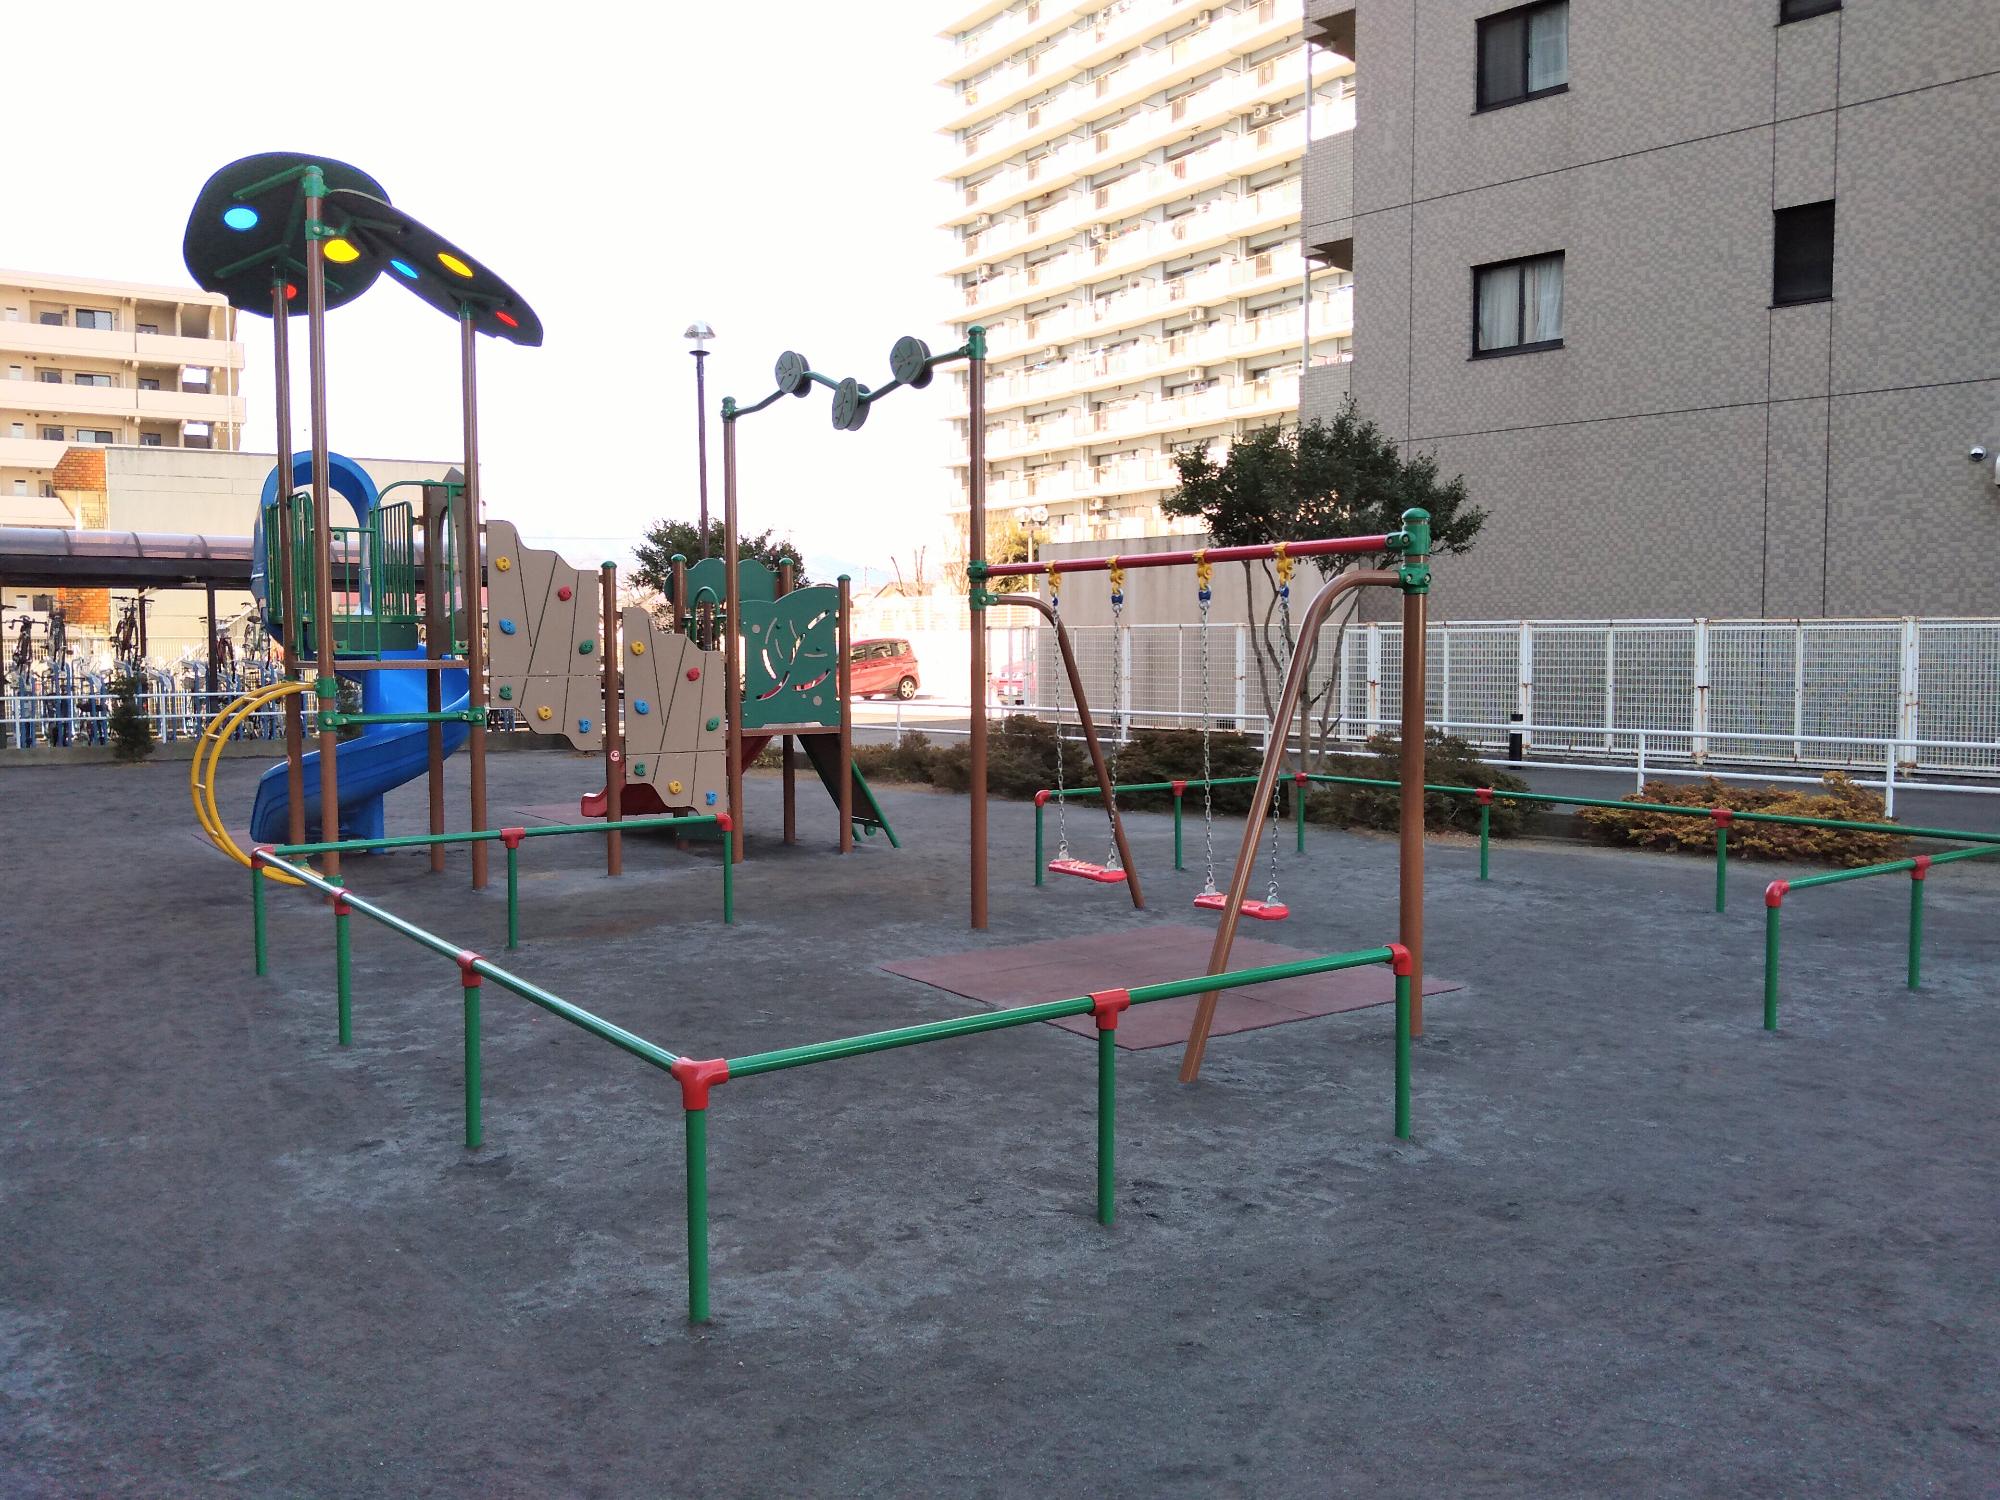 周囲には植木が植えられており、砂場に続くすべり台や上から吊るされたタイヤの遊具などが設置されている妻田東公園の写真